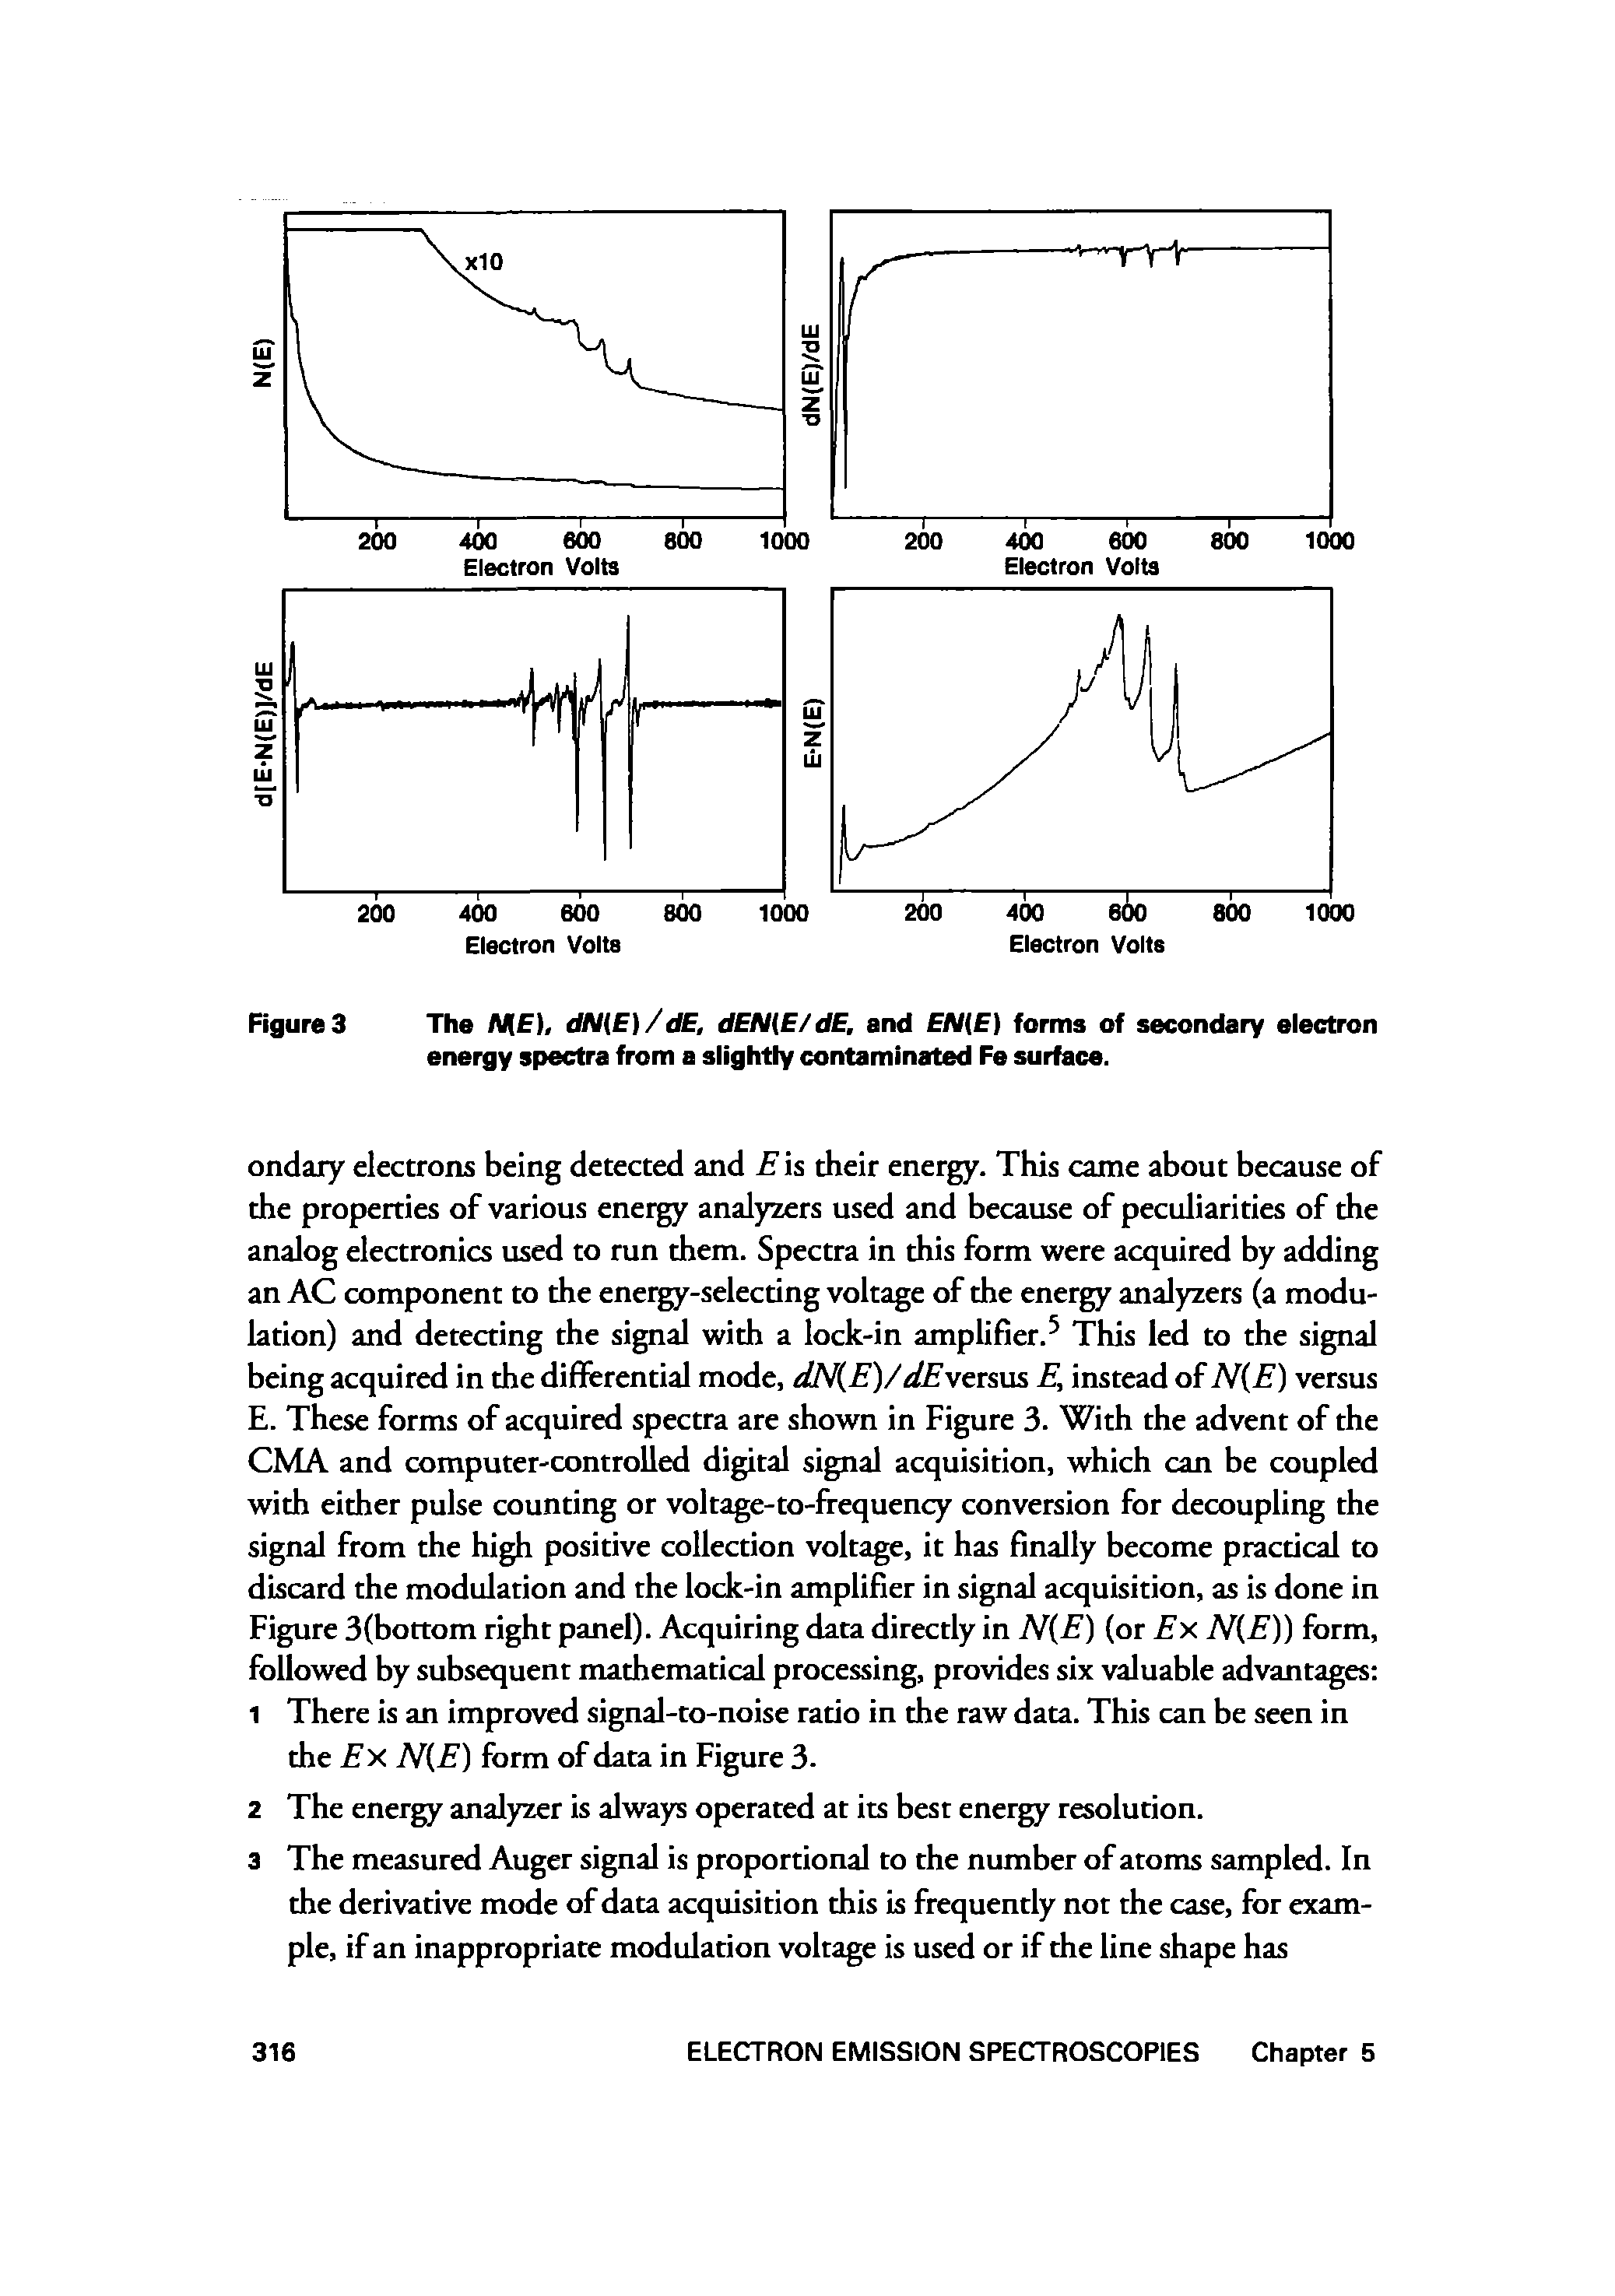 Figures The NIE), dN E)/dE, dEN E/dE. and EN E) forms of secondary electron energy spectra from a slightly contaminated Fe surface.